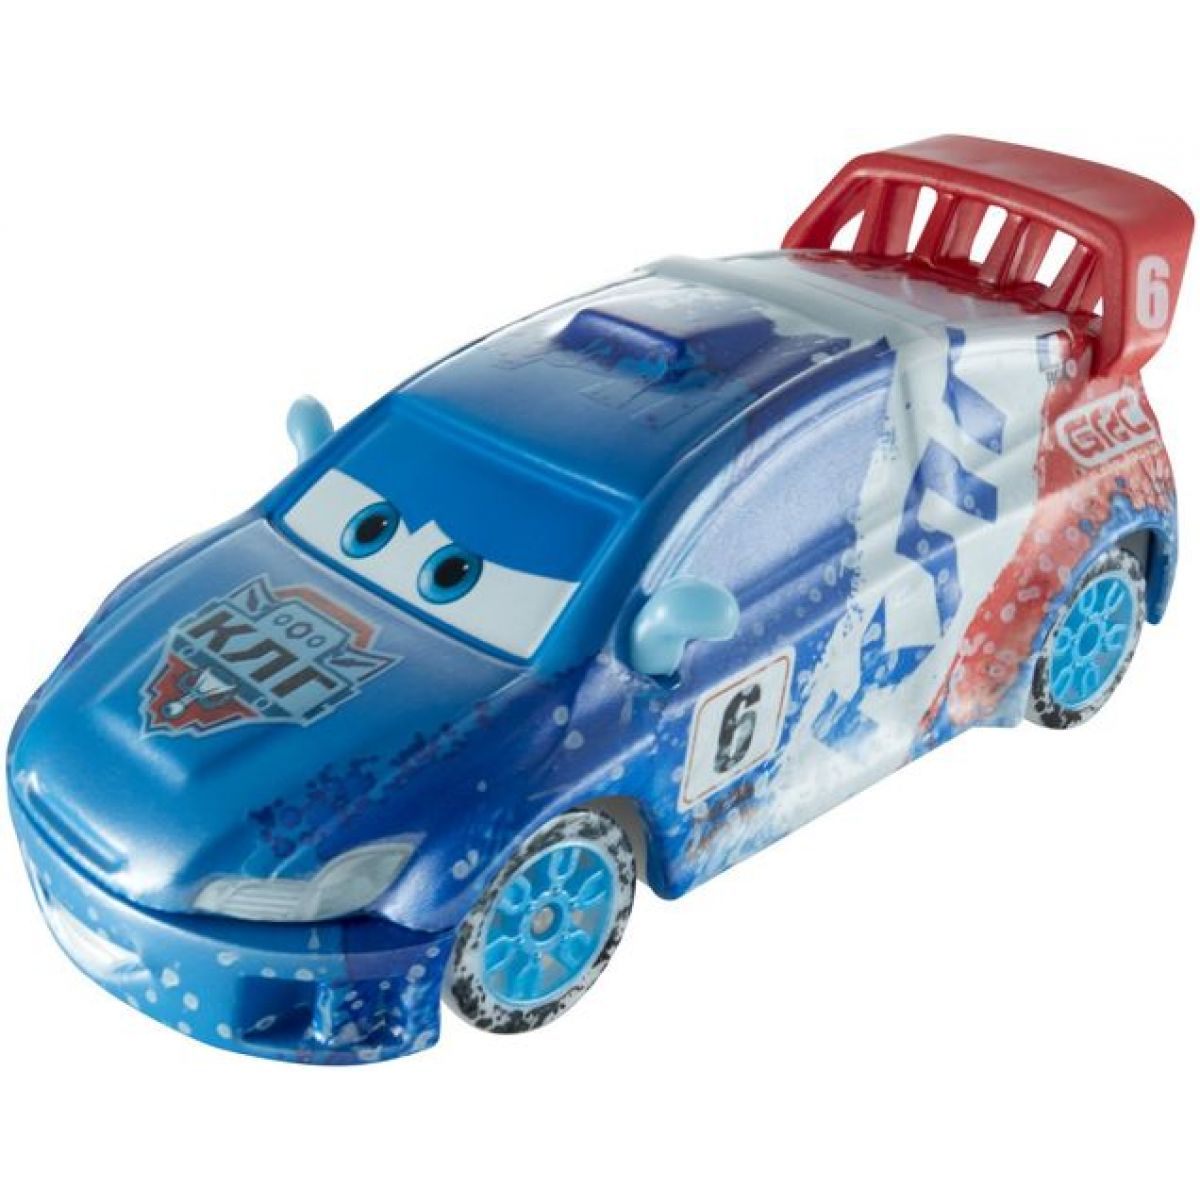 Mattel Cars Závody na ledě - Raoul Caroule